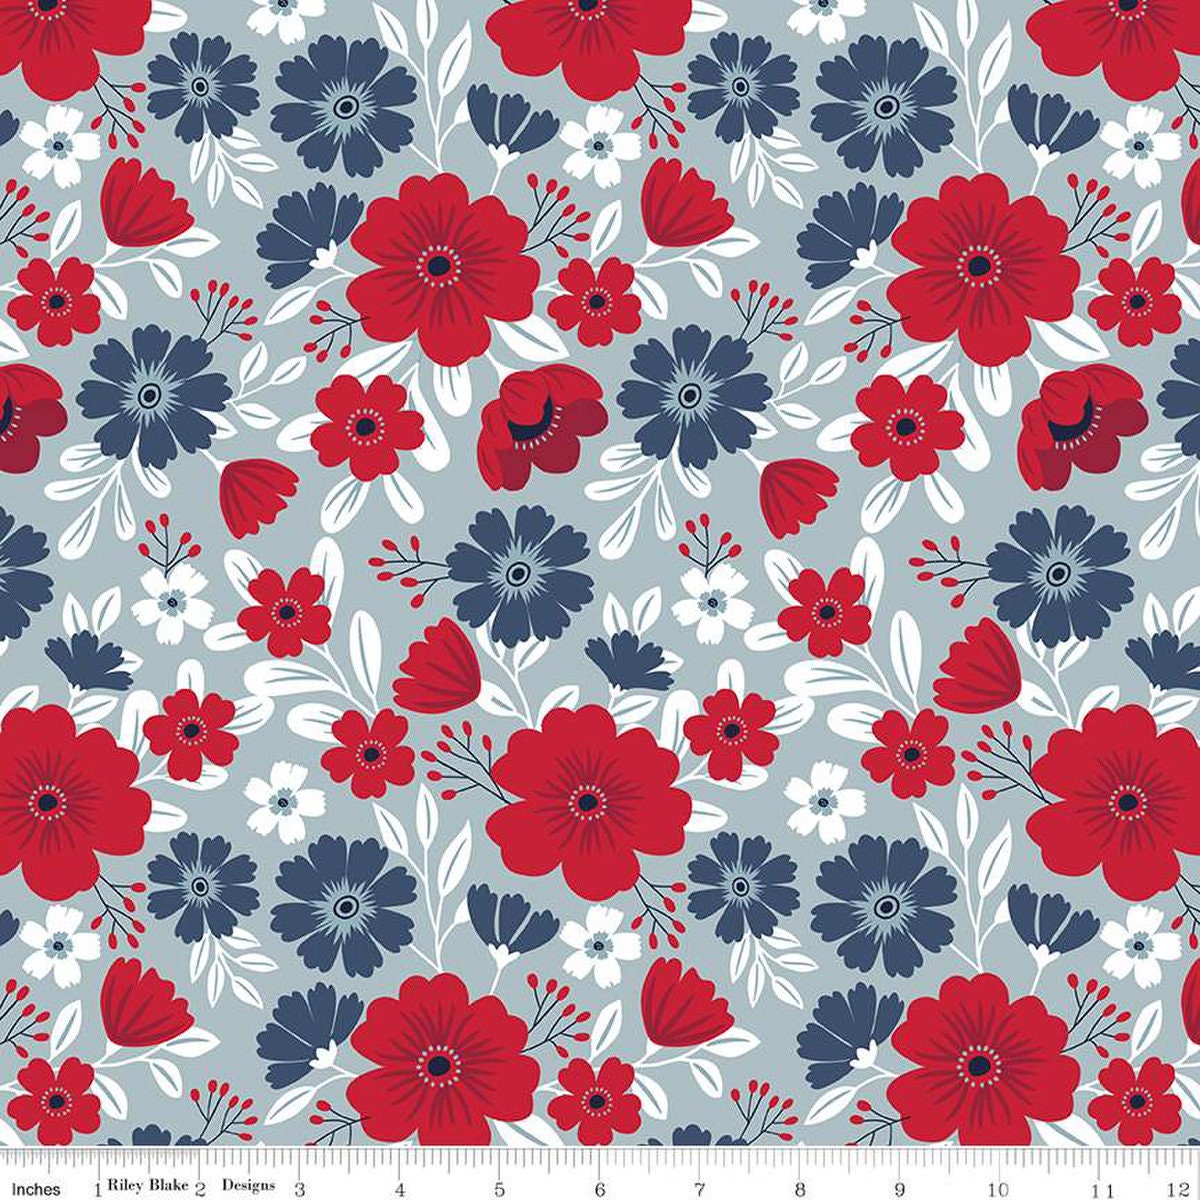 American Beauty Fat Quarter Bundle 27pc - Riley Blake Designs FQ-14440-27, Patriotic Floral Fabric Fat Quarter Bundle